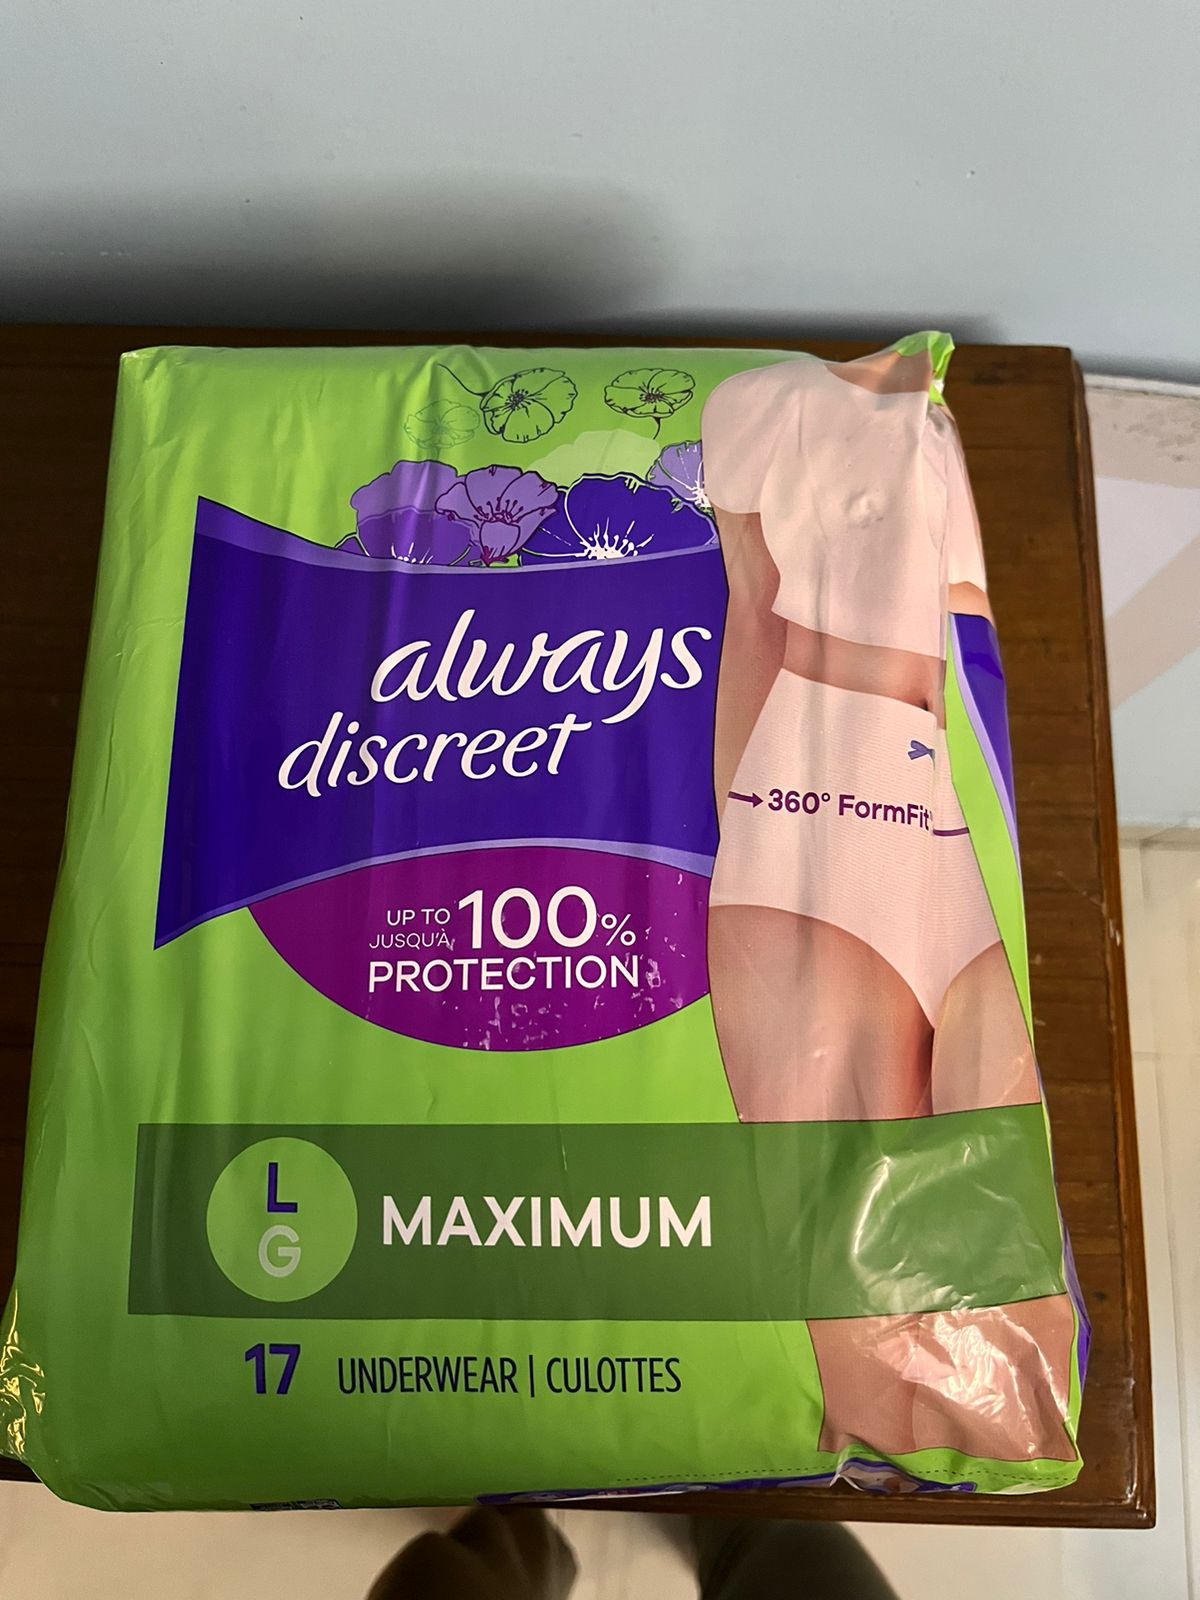 Always Discreet Incontinence & Postpartum Underwear for Women